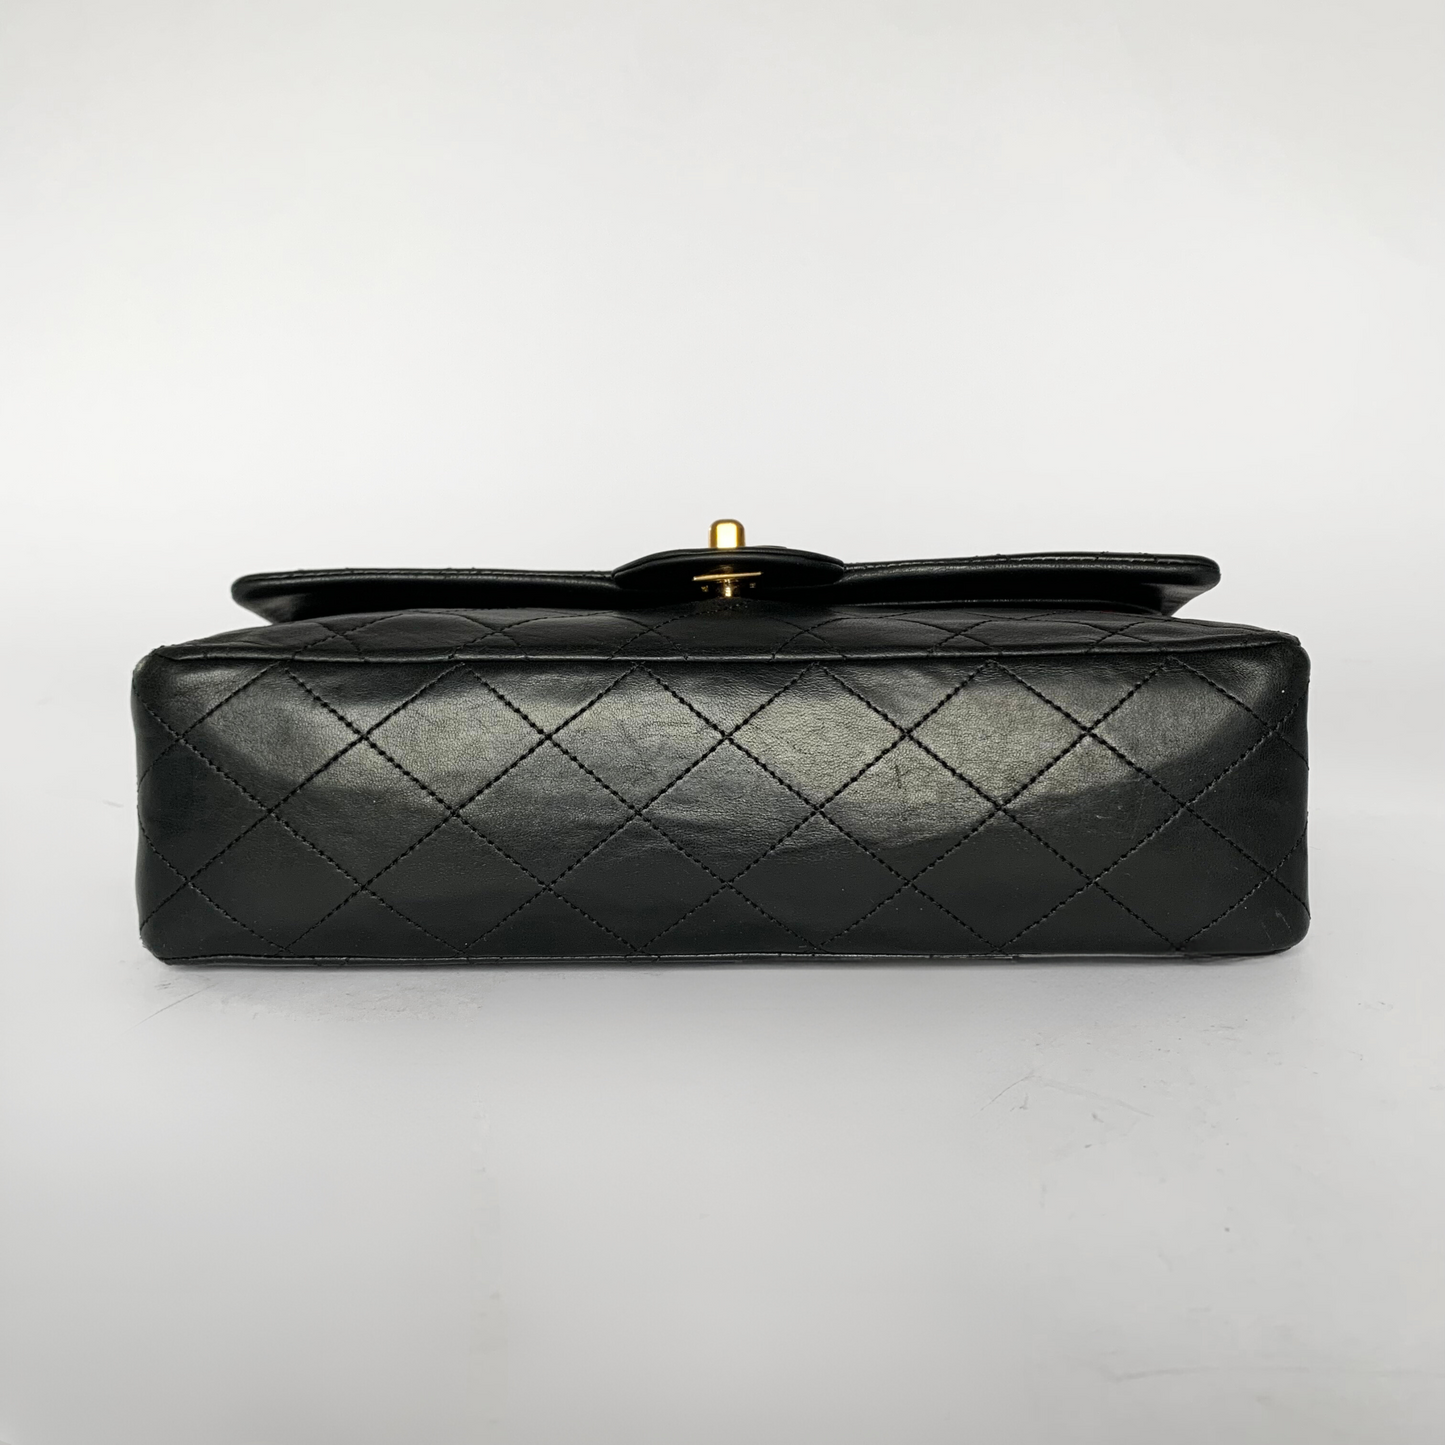 Chanel Chanel Doble clasica Flap Bag Piel de cordero mediana - Bolso de mano - Etoile Luxury Vintage